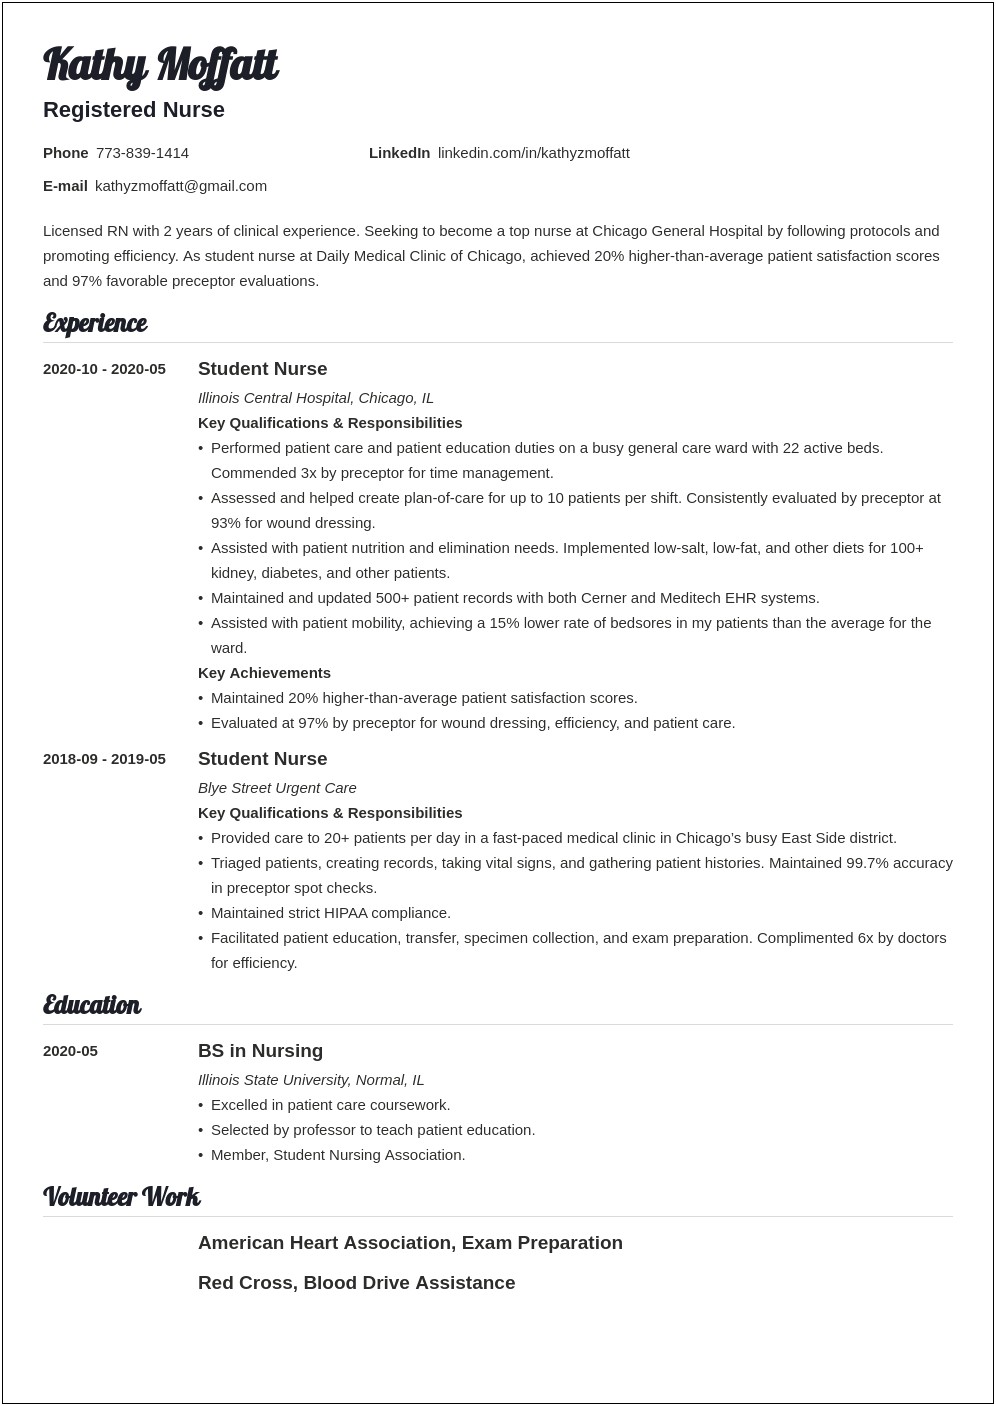 Resume Description For Med Surg Rn